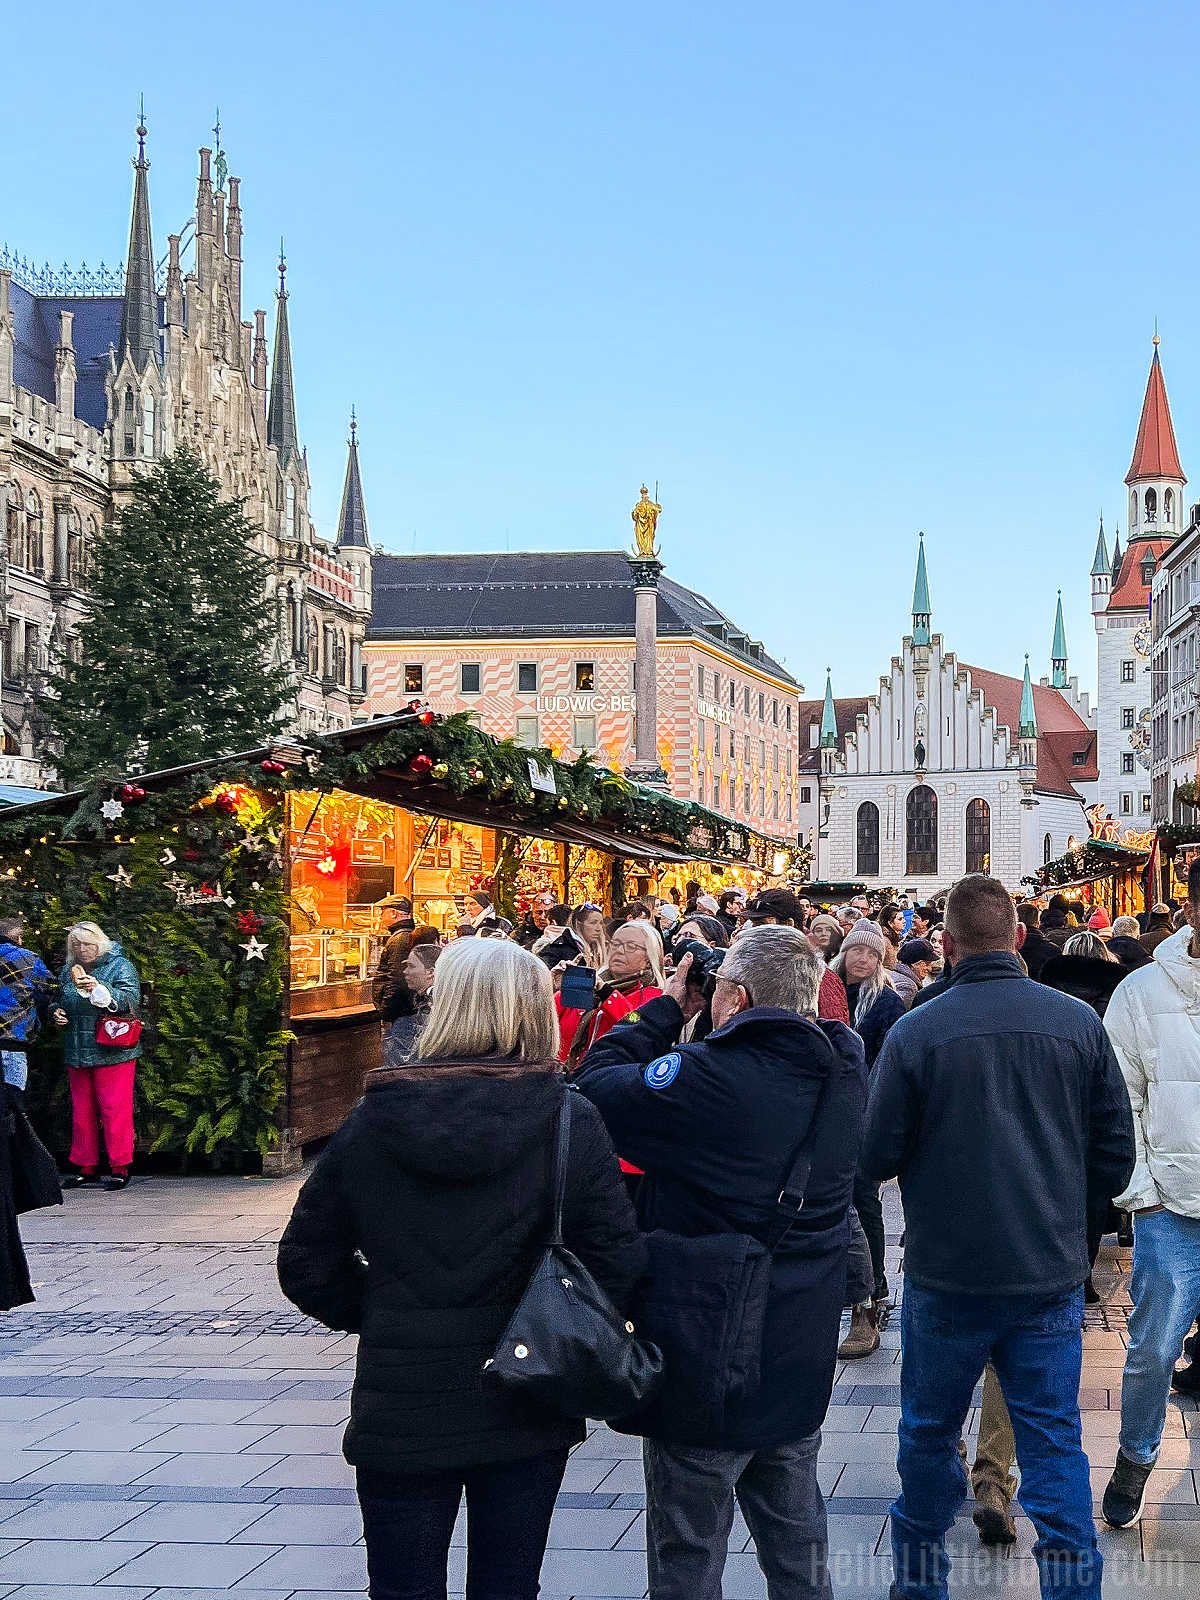 People walking around the Marienplatz Christmas Market in Munich.